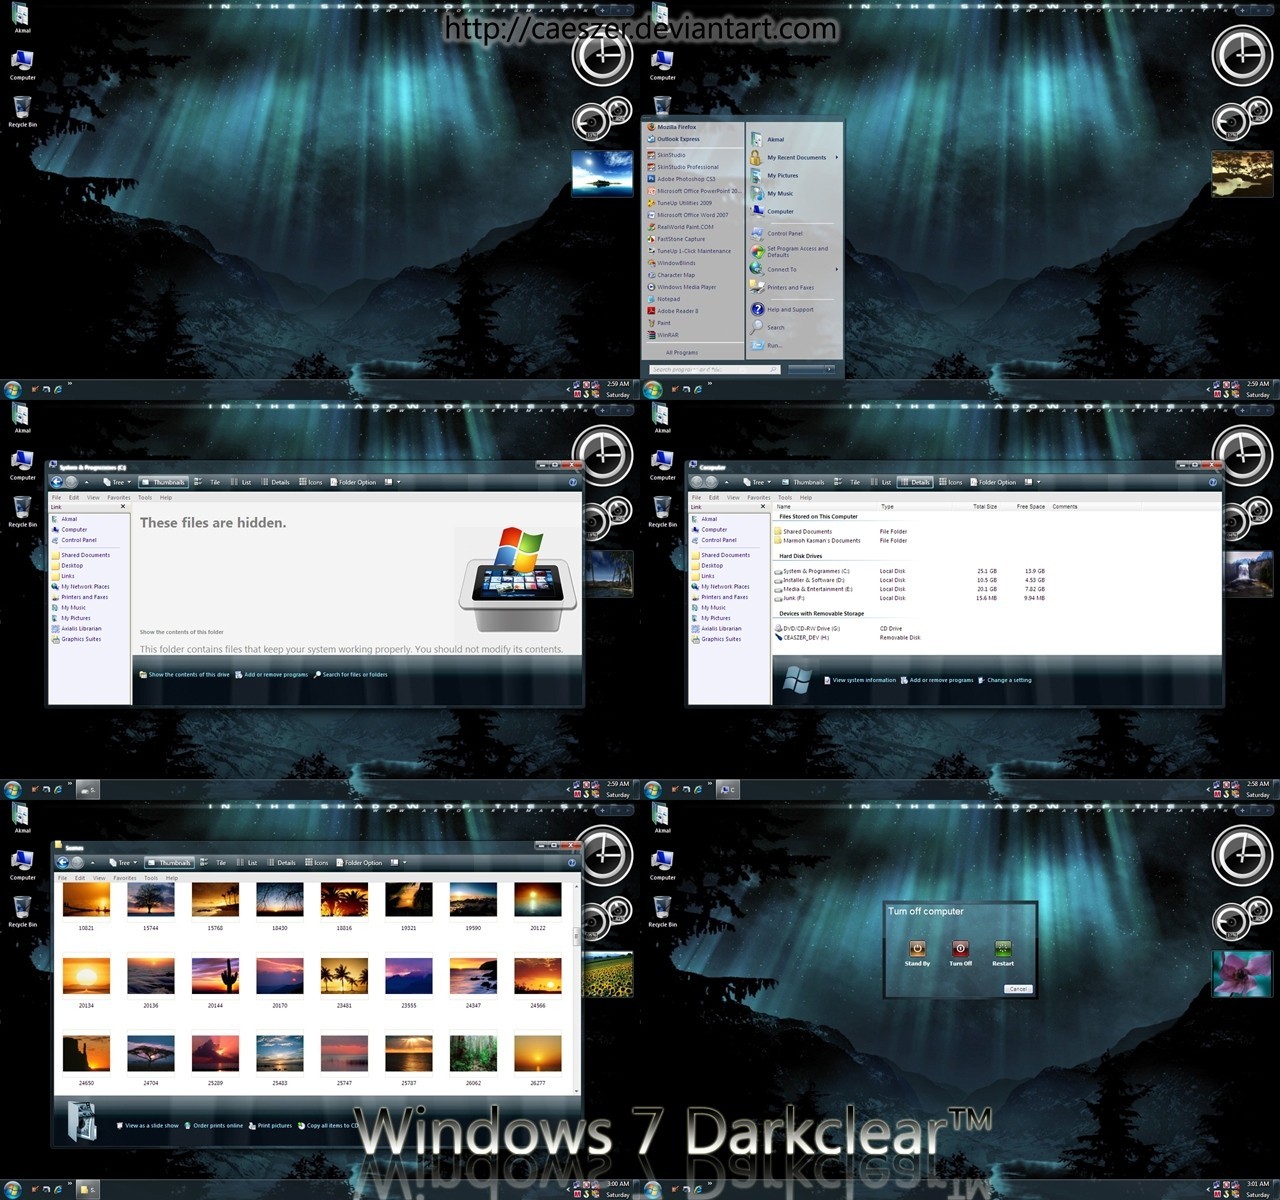 Windows 7 Darkclear for XP